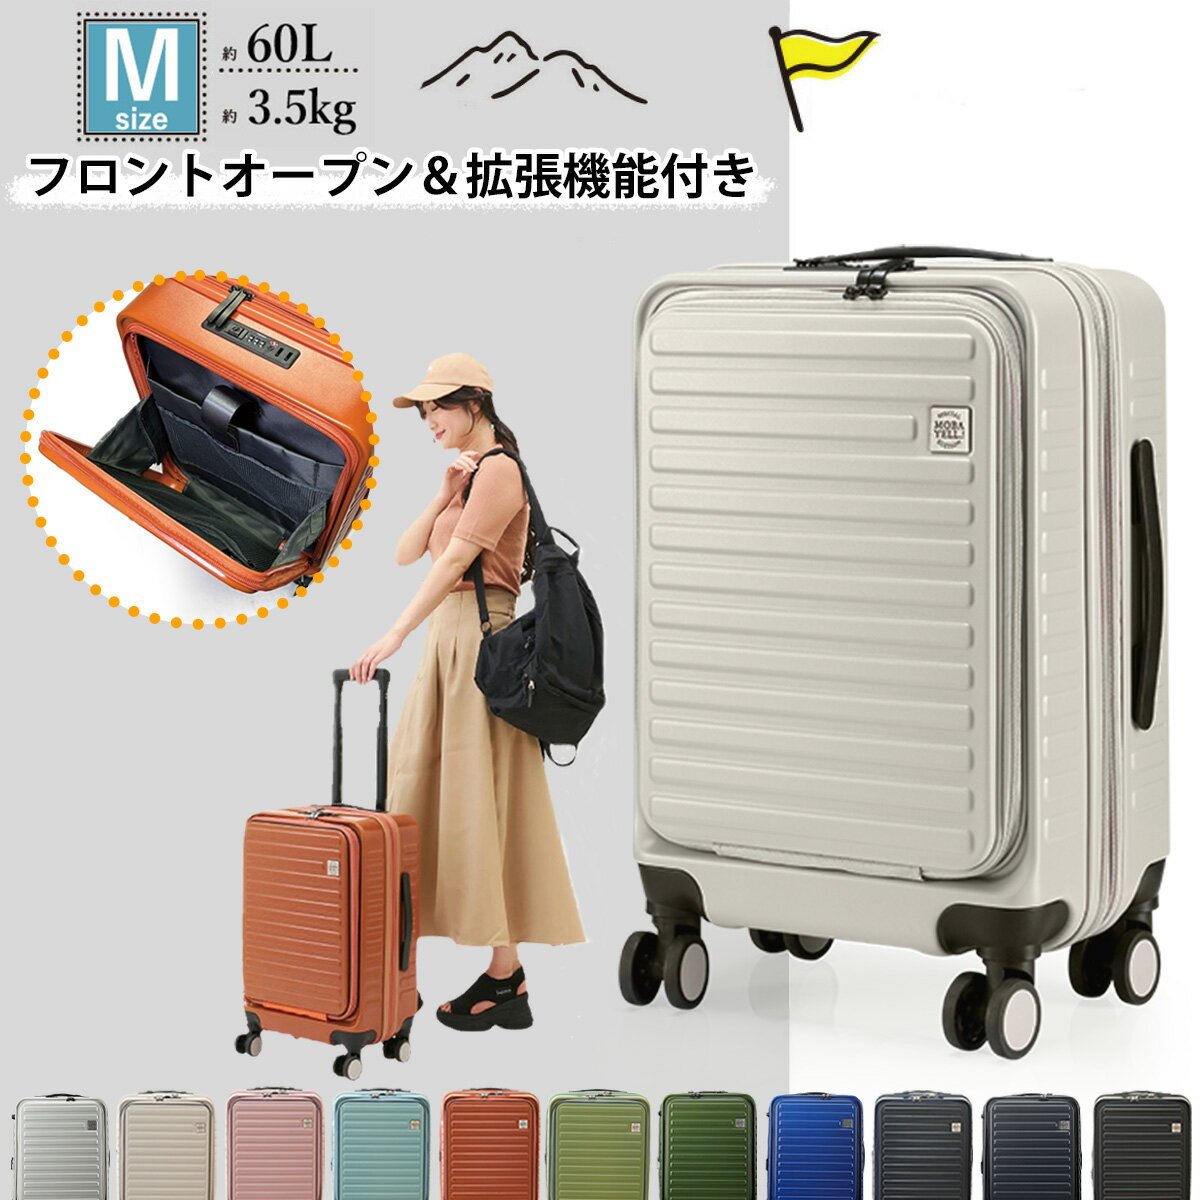 【50%OFF】 スーツケース キャリーケ